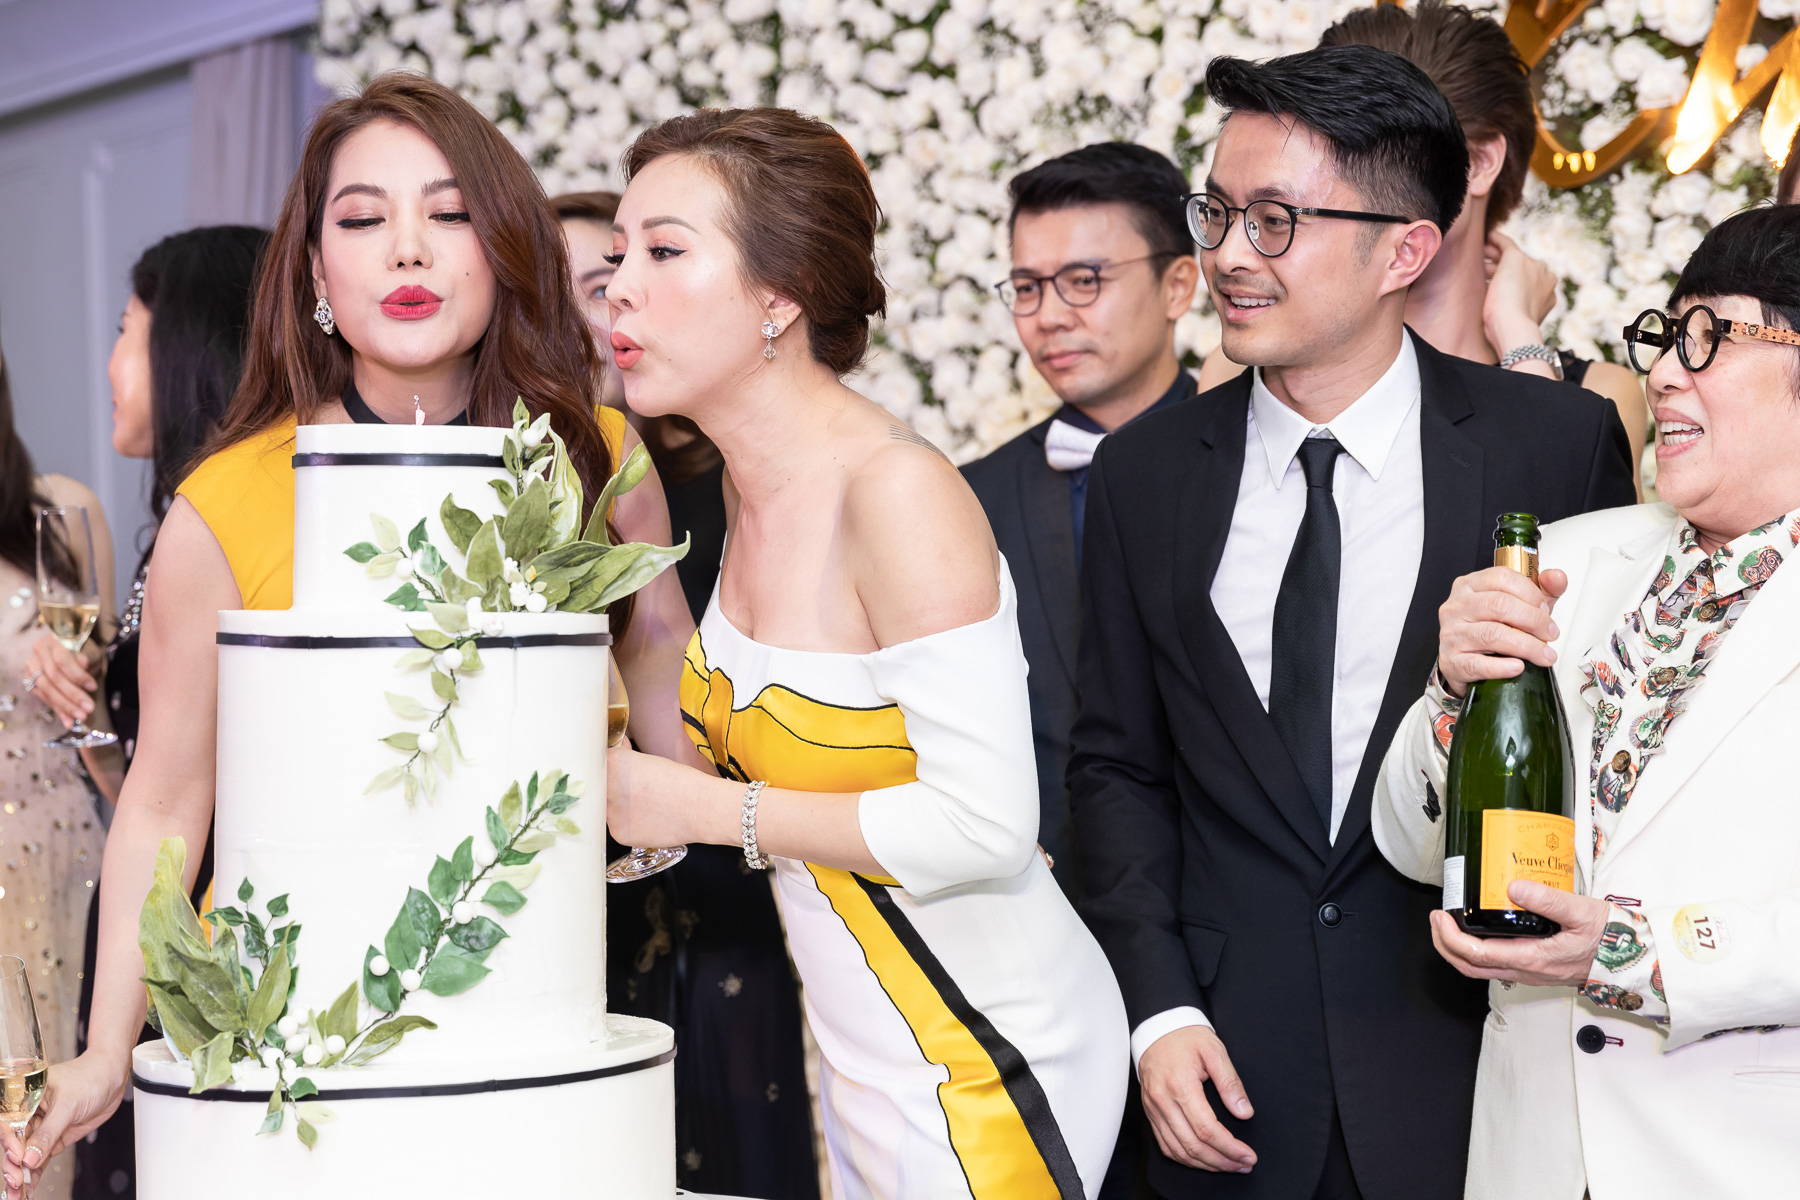 Hoa hậu Thu Hoài cũng đã cùng với gia đình, đối tác cùng các nghệ sĩ thổi nến chúc mừng sinh nhật lần thứ 15 thẩm mỹ viện của chị.